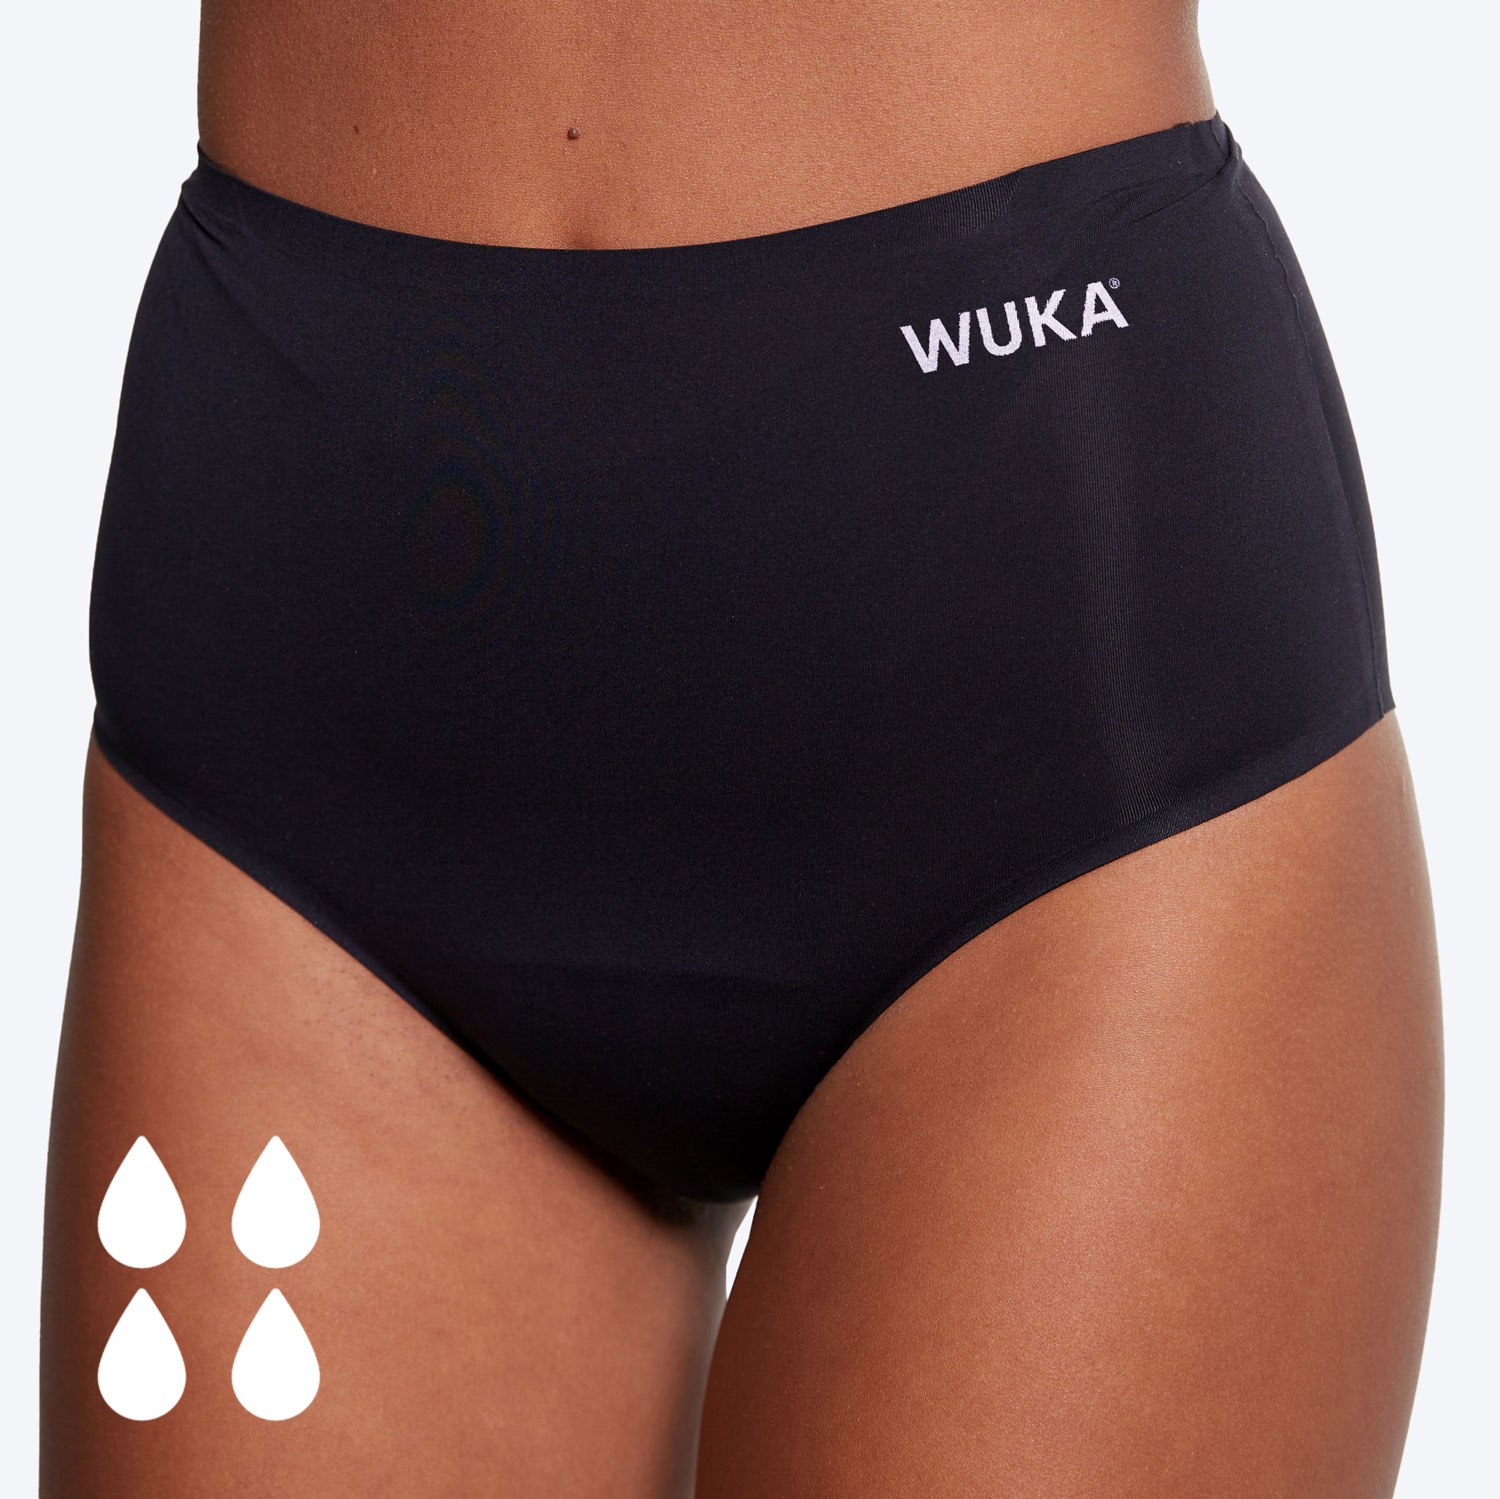 WUKA Perform™ Leggings Period Wear Review 